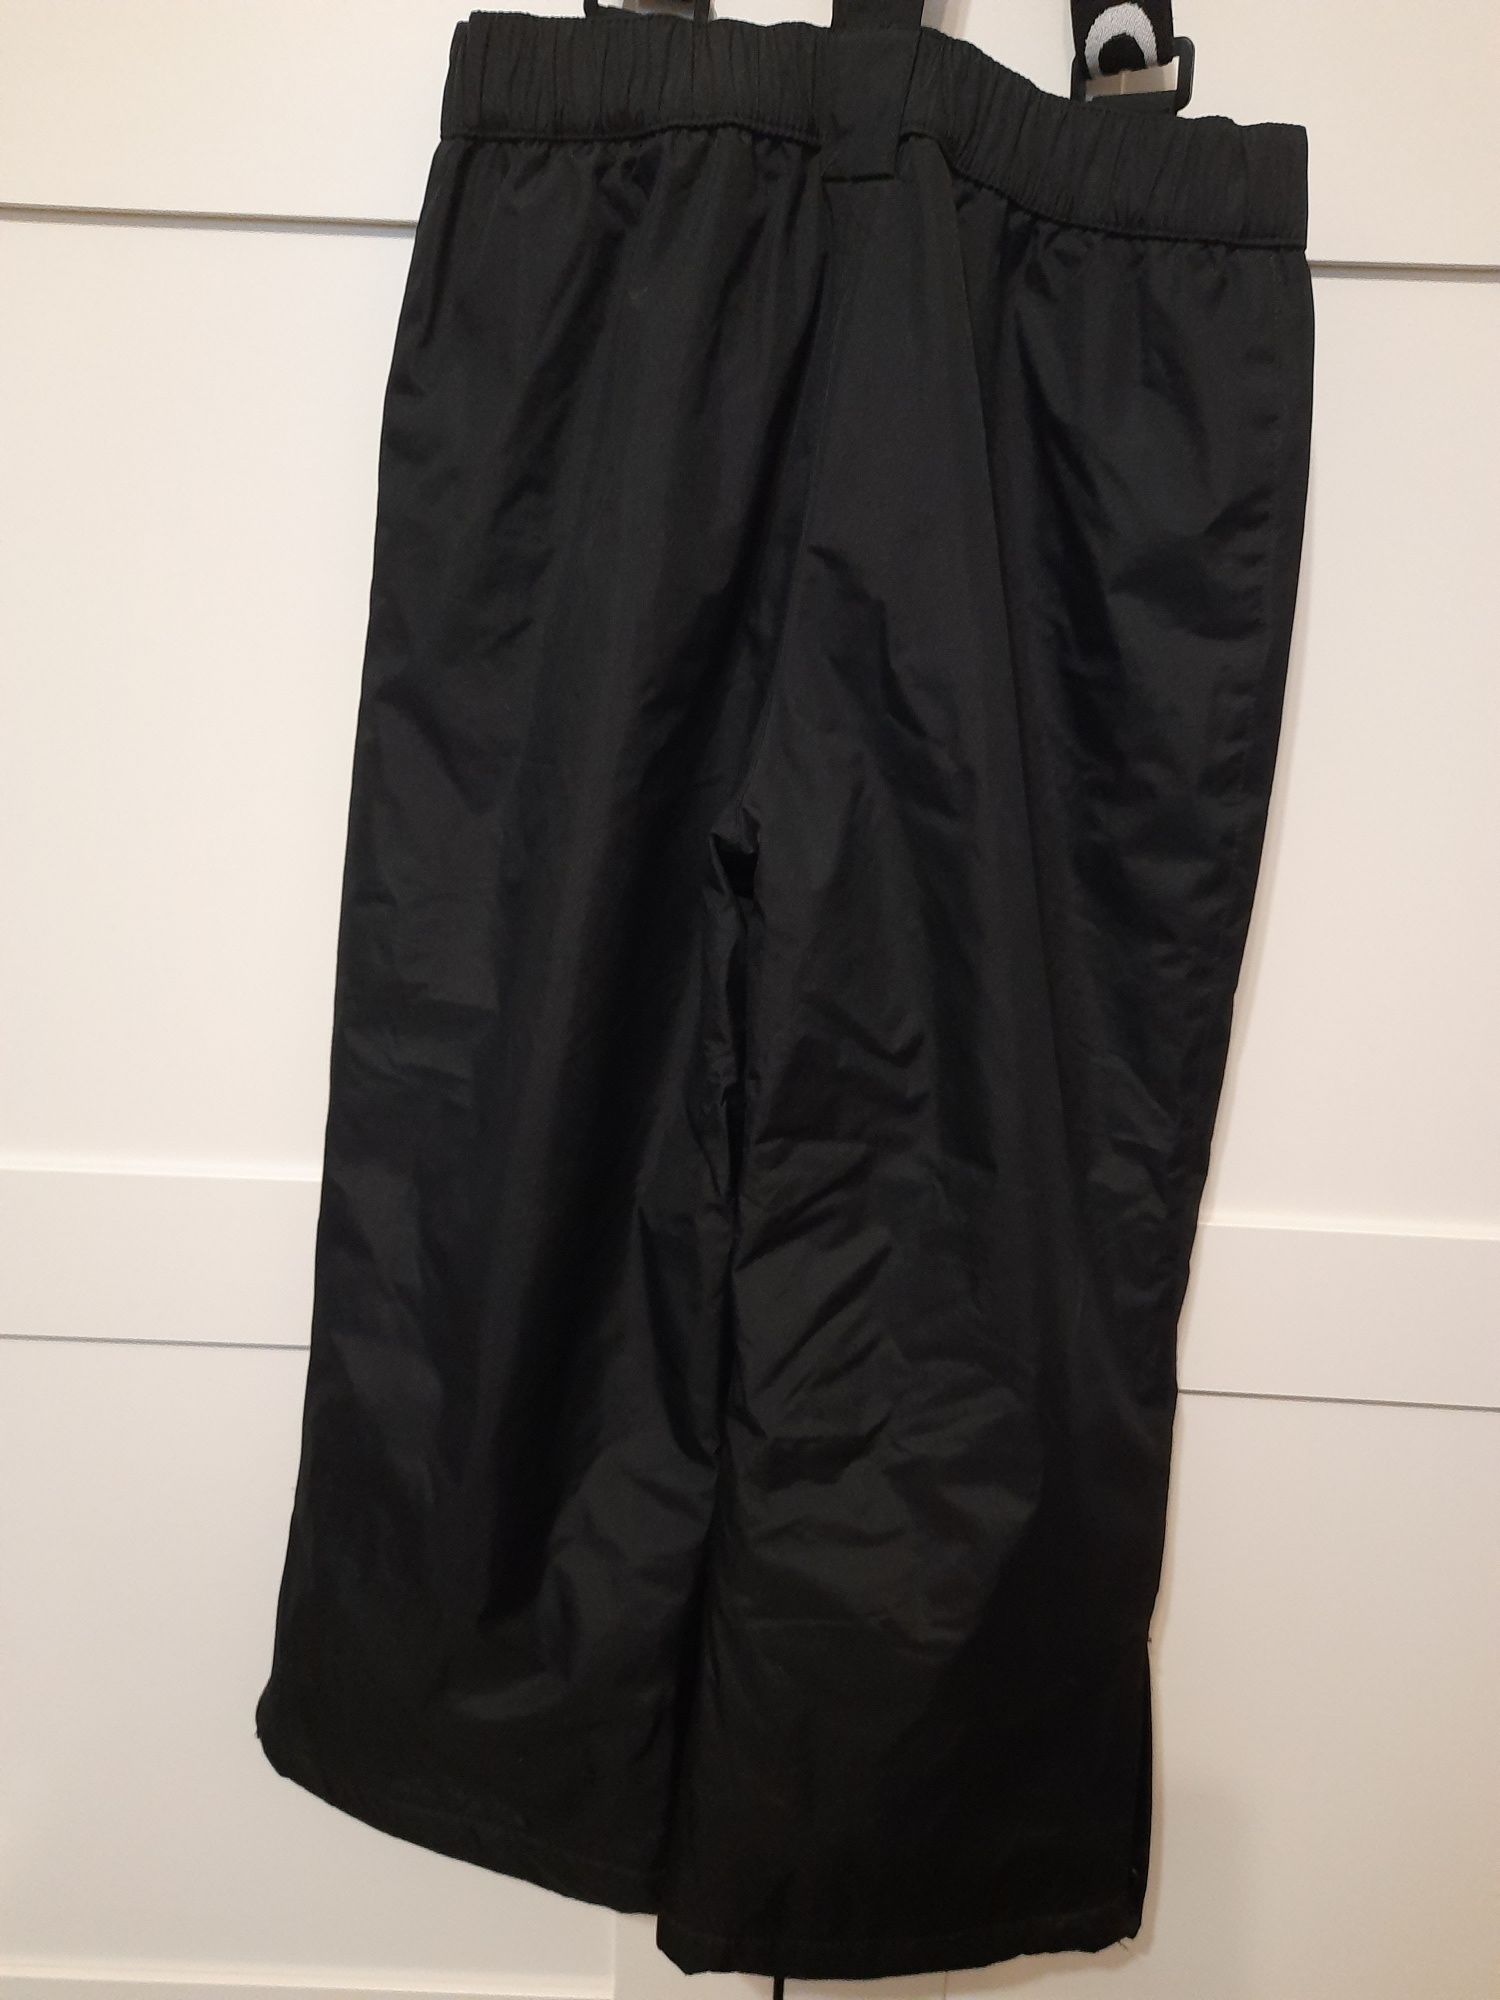 Spodnie narciarskie czarne BRUGI, jak nowe, roz. 110 - 116